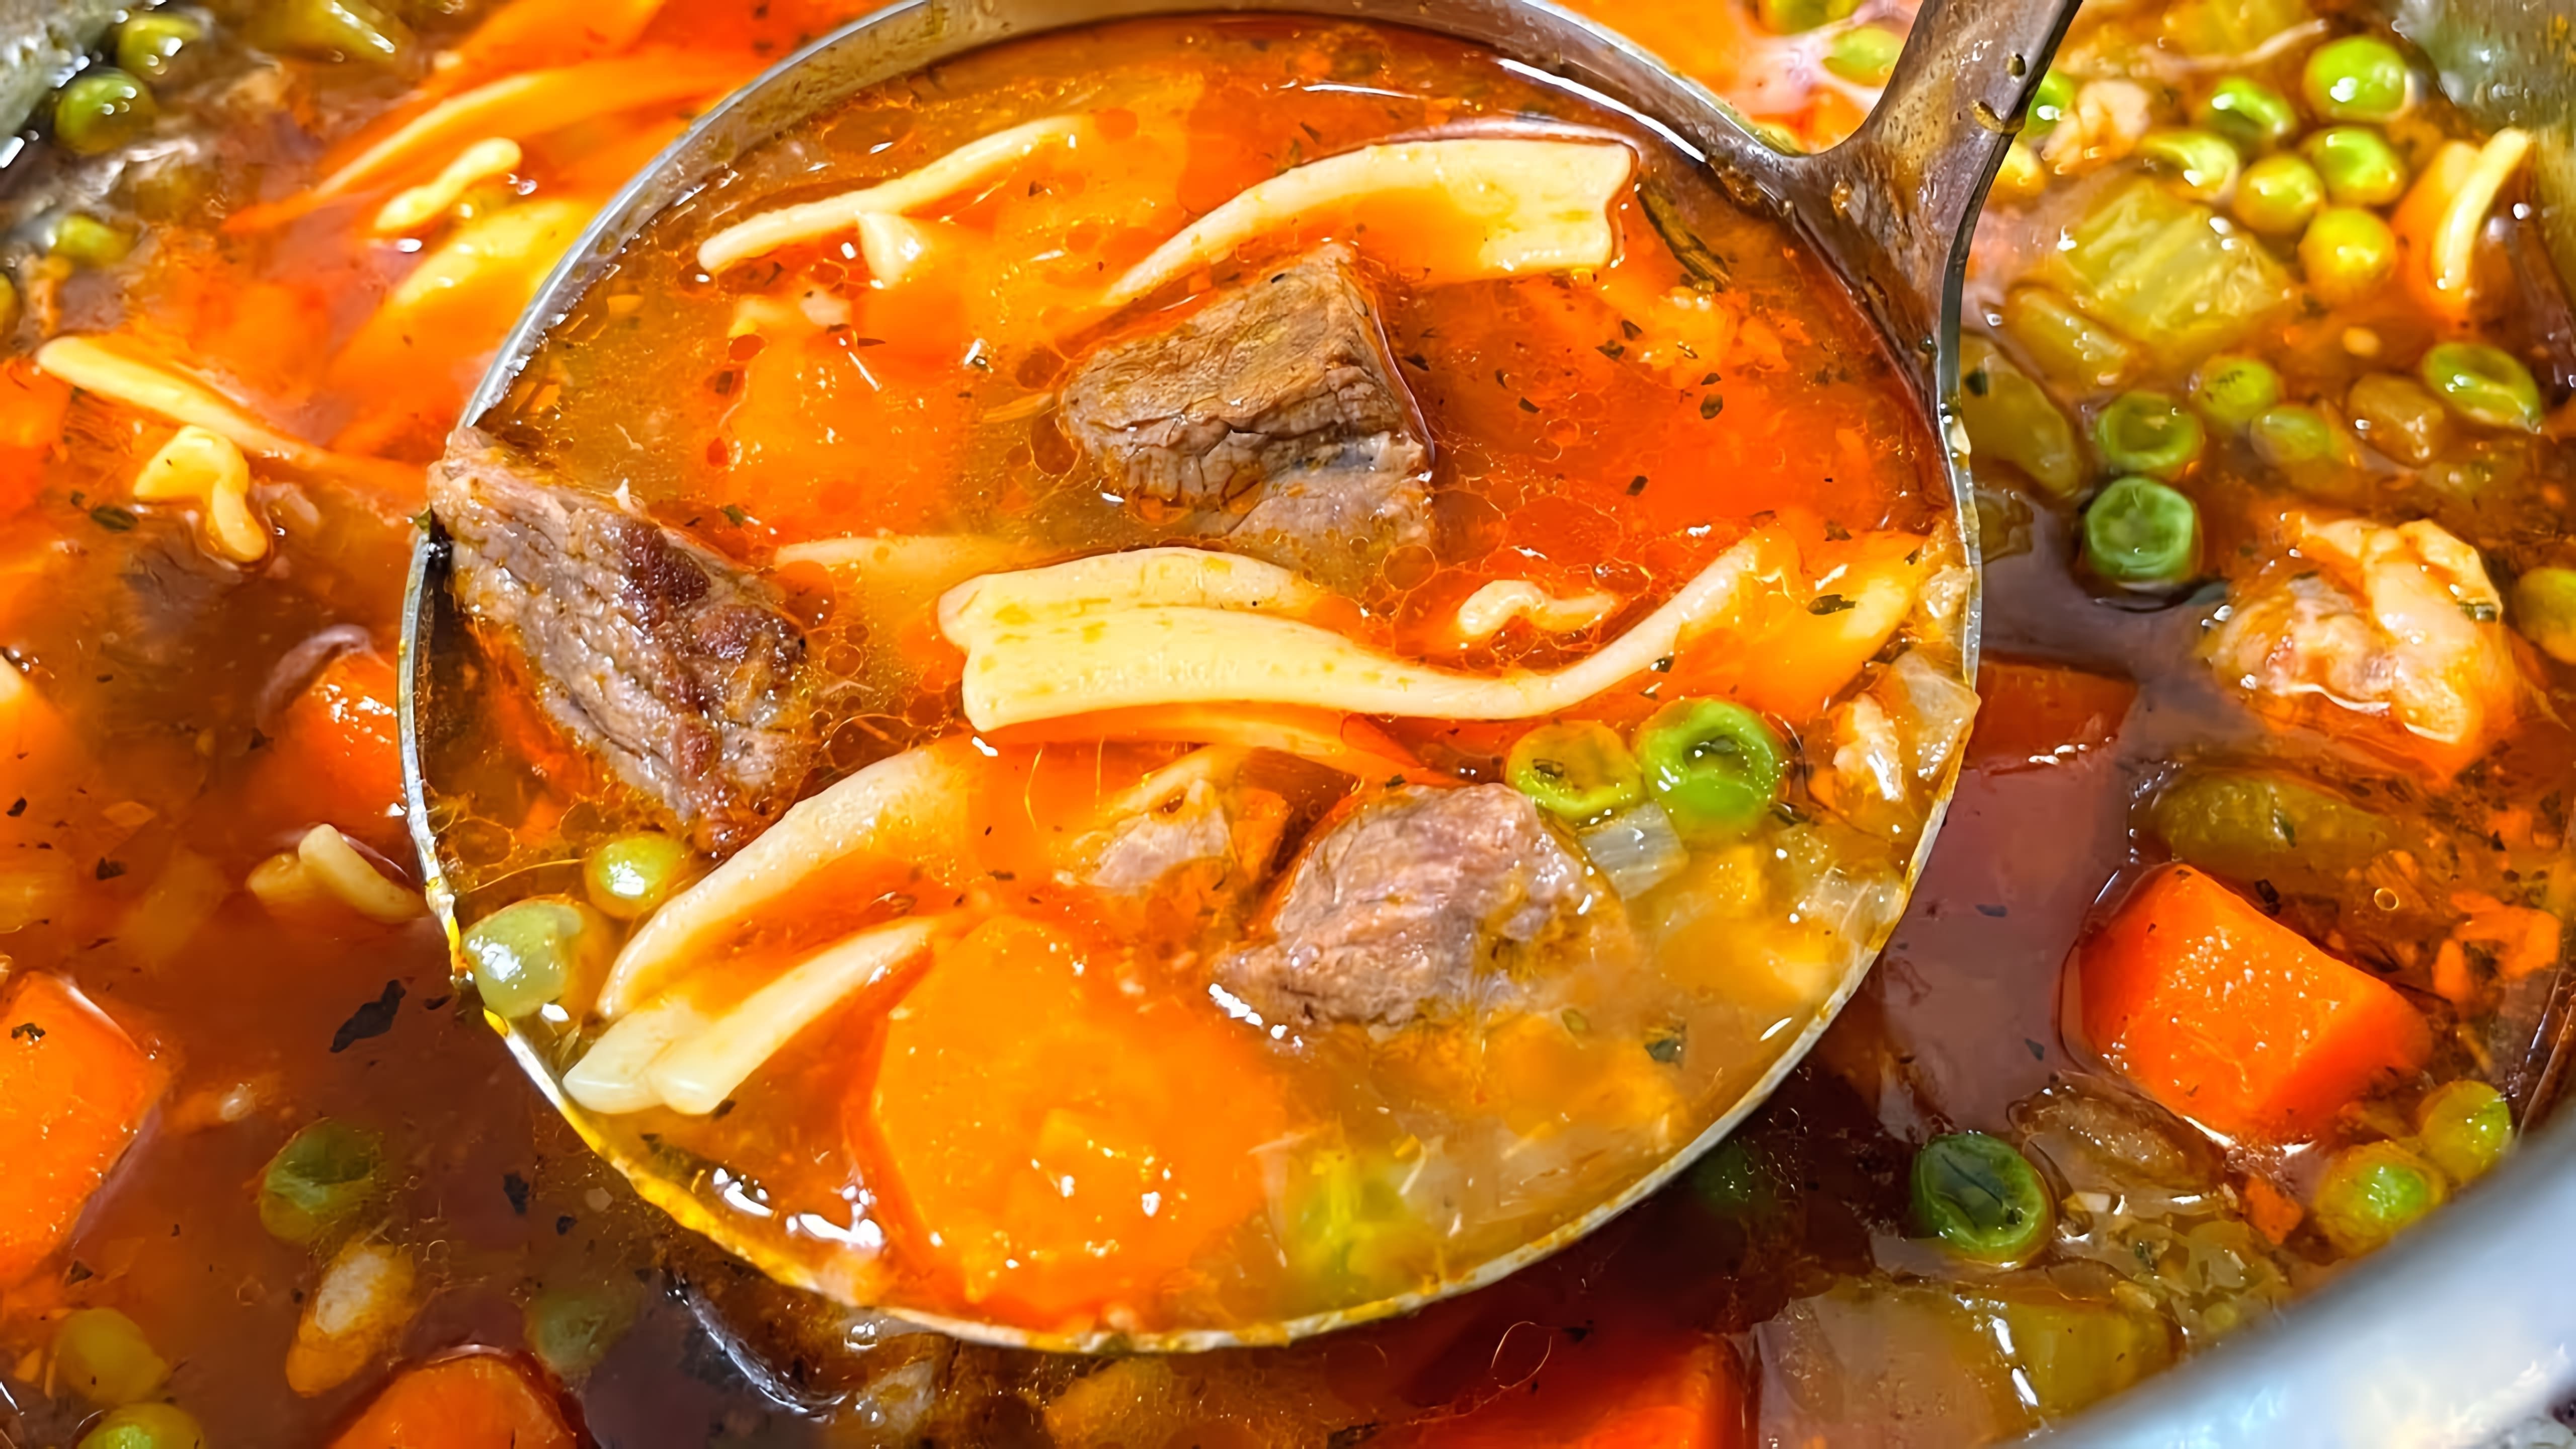 В этом видео демонстрируется процесс приготовления вкусного говяжьего супа с лапшой и мясом